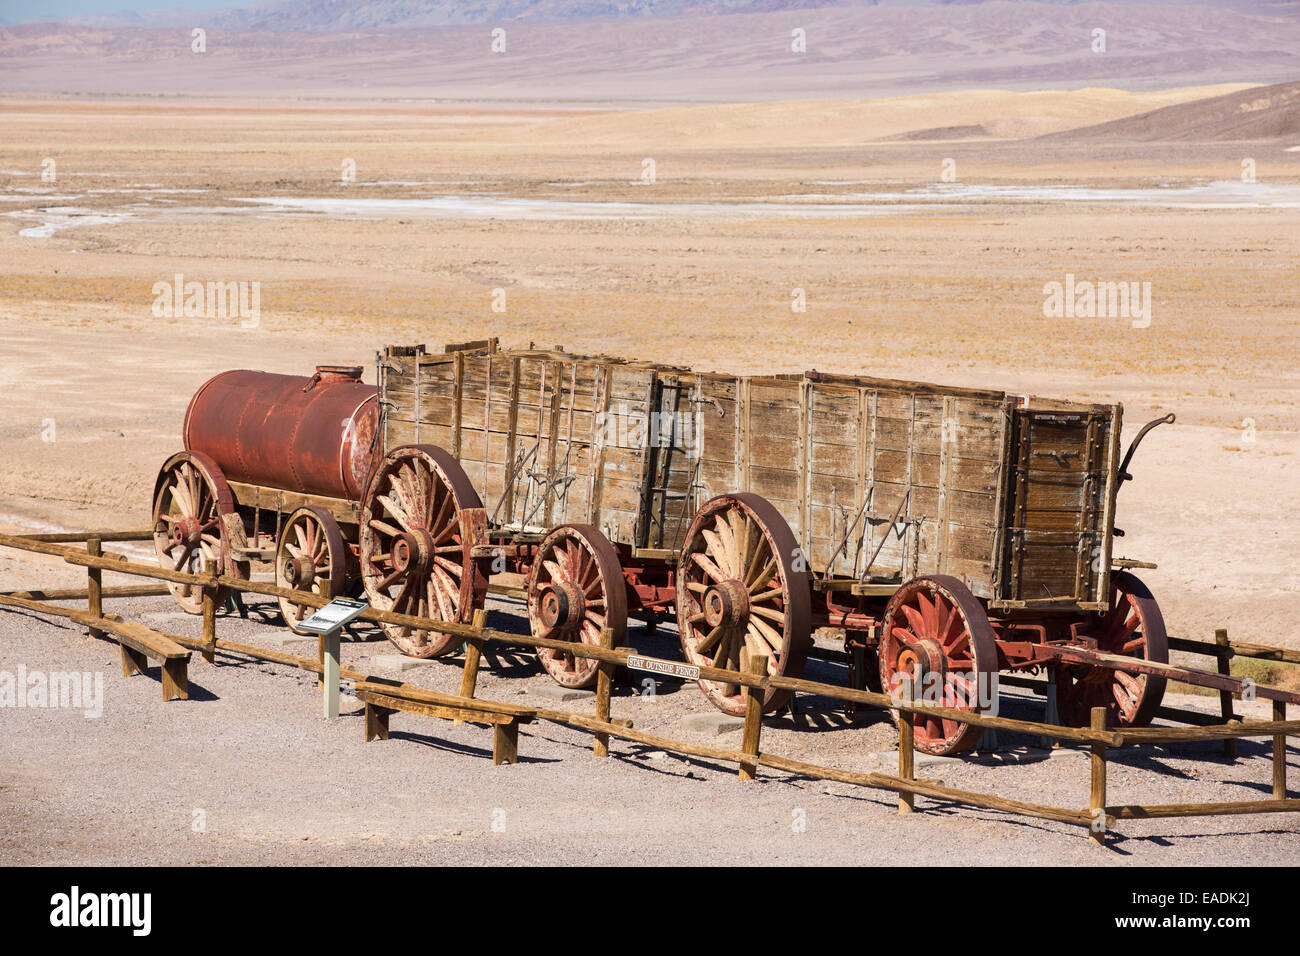 Eine alte Wagenzug an der Harmony Borax arbeitet im Death Valley, die den niedrigsten, heißesten und trockensten Ort in den USA, mit einer durchschnittlichen jährlichen Niederschlagsmenge von etwa 2 Zoll einige Jahre ist, die es nicht überhaupt keinen Regen erhält. Stockfoto